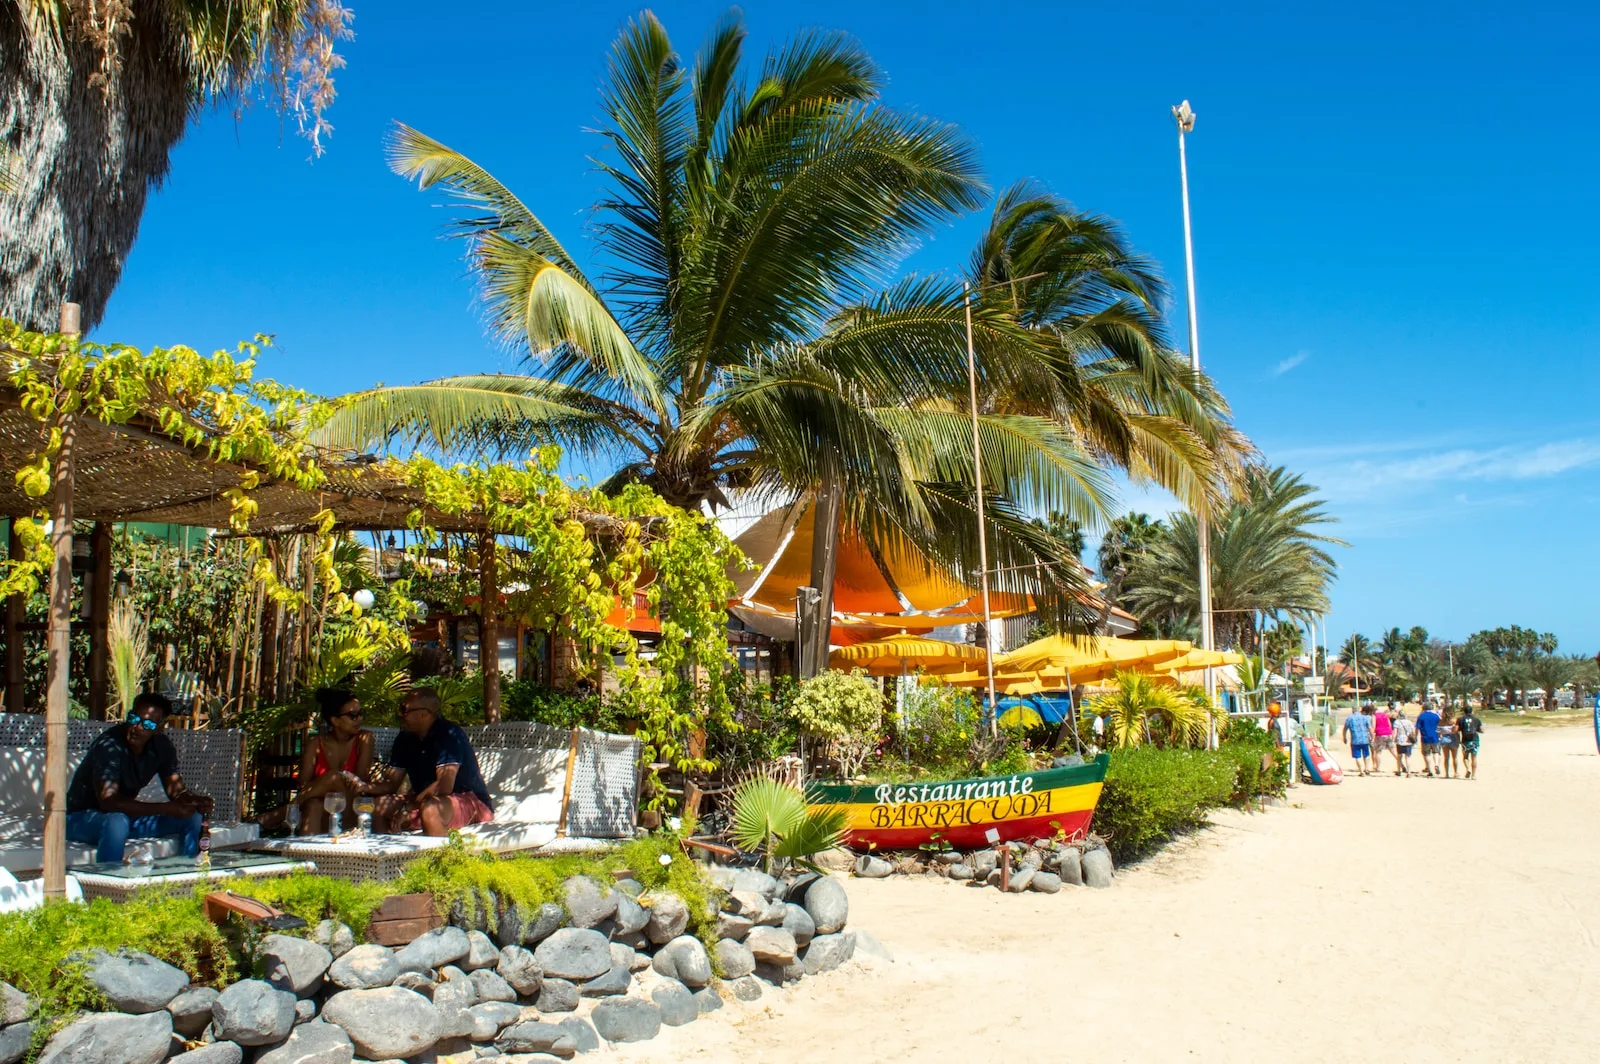 Una fotografia del Ristorante Barracuda, un popolare punto di ristoro situato sulla pittoresca spiaggia di Ponta Sino a Santa Maria, Isola di Sal, Capo Verde, offrendo una vista mozzafiato sull'Oceano Atlantico.